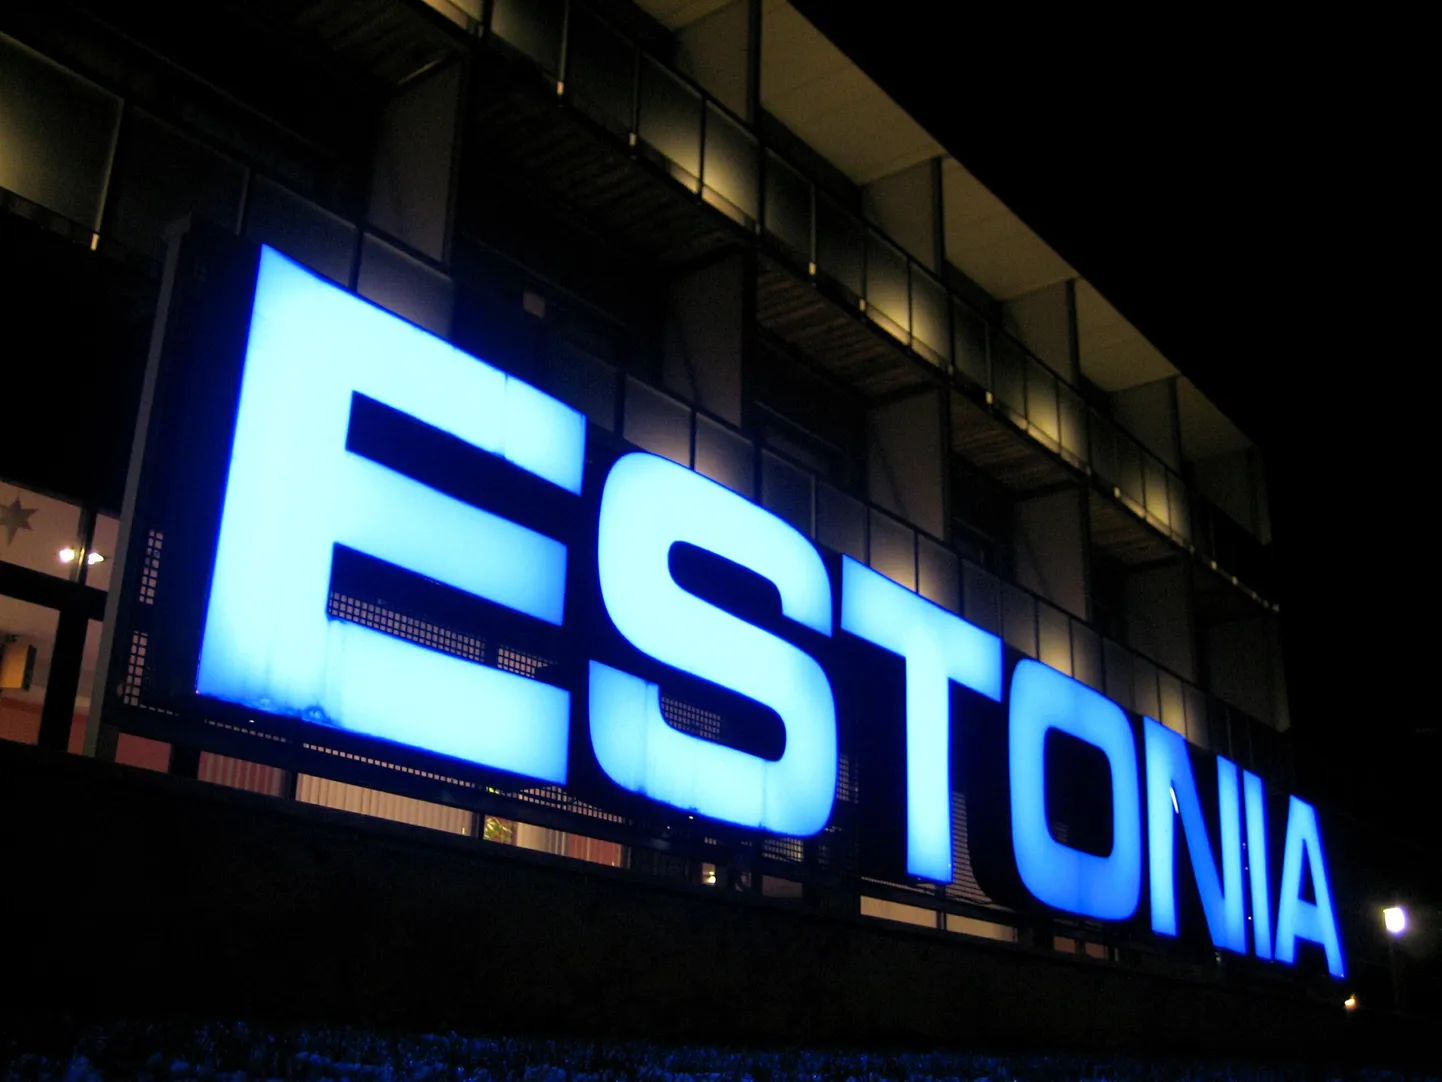 Taastusravikeskuse Estonia sära määrib kahtlustus, et nende juht on seotud hämarate tegudega.